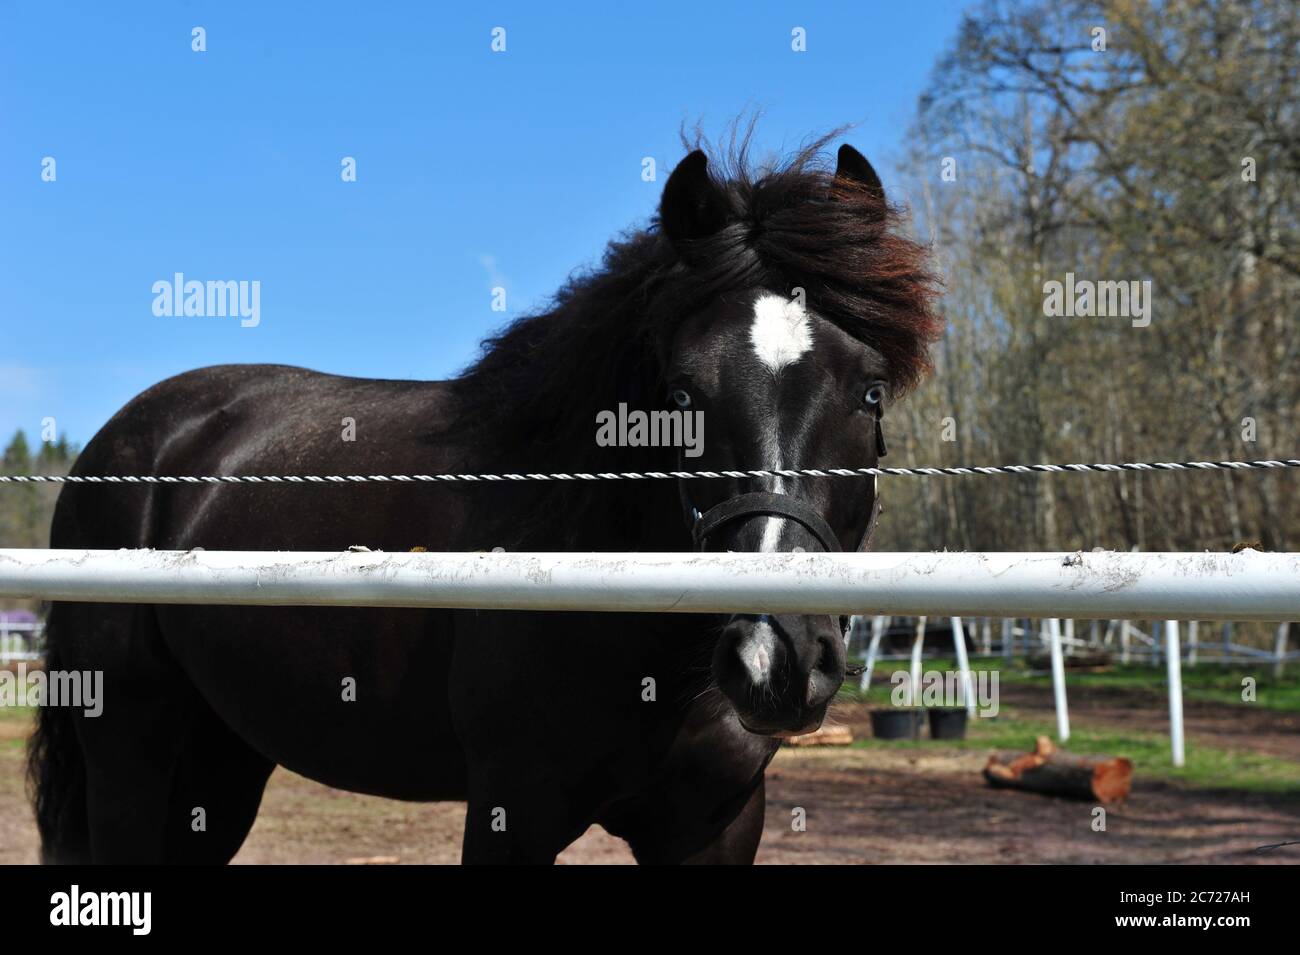 Cavallo dagli occhi blu che si stende da dietro la recinzione. Cavallo nero in giornata di sole. Foto orizzontale con spazio per la copia nella parte superiore. Foto Stock